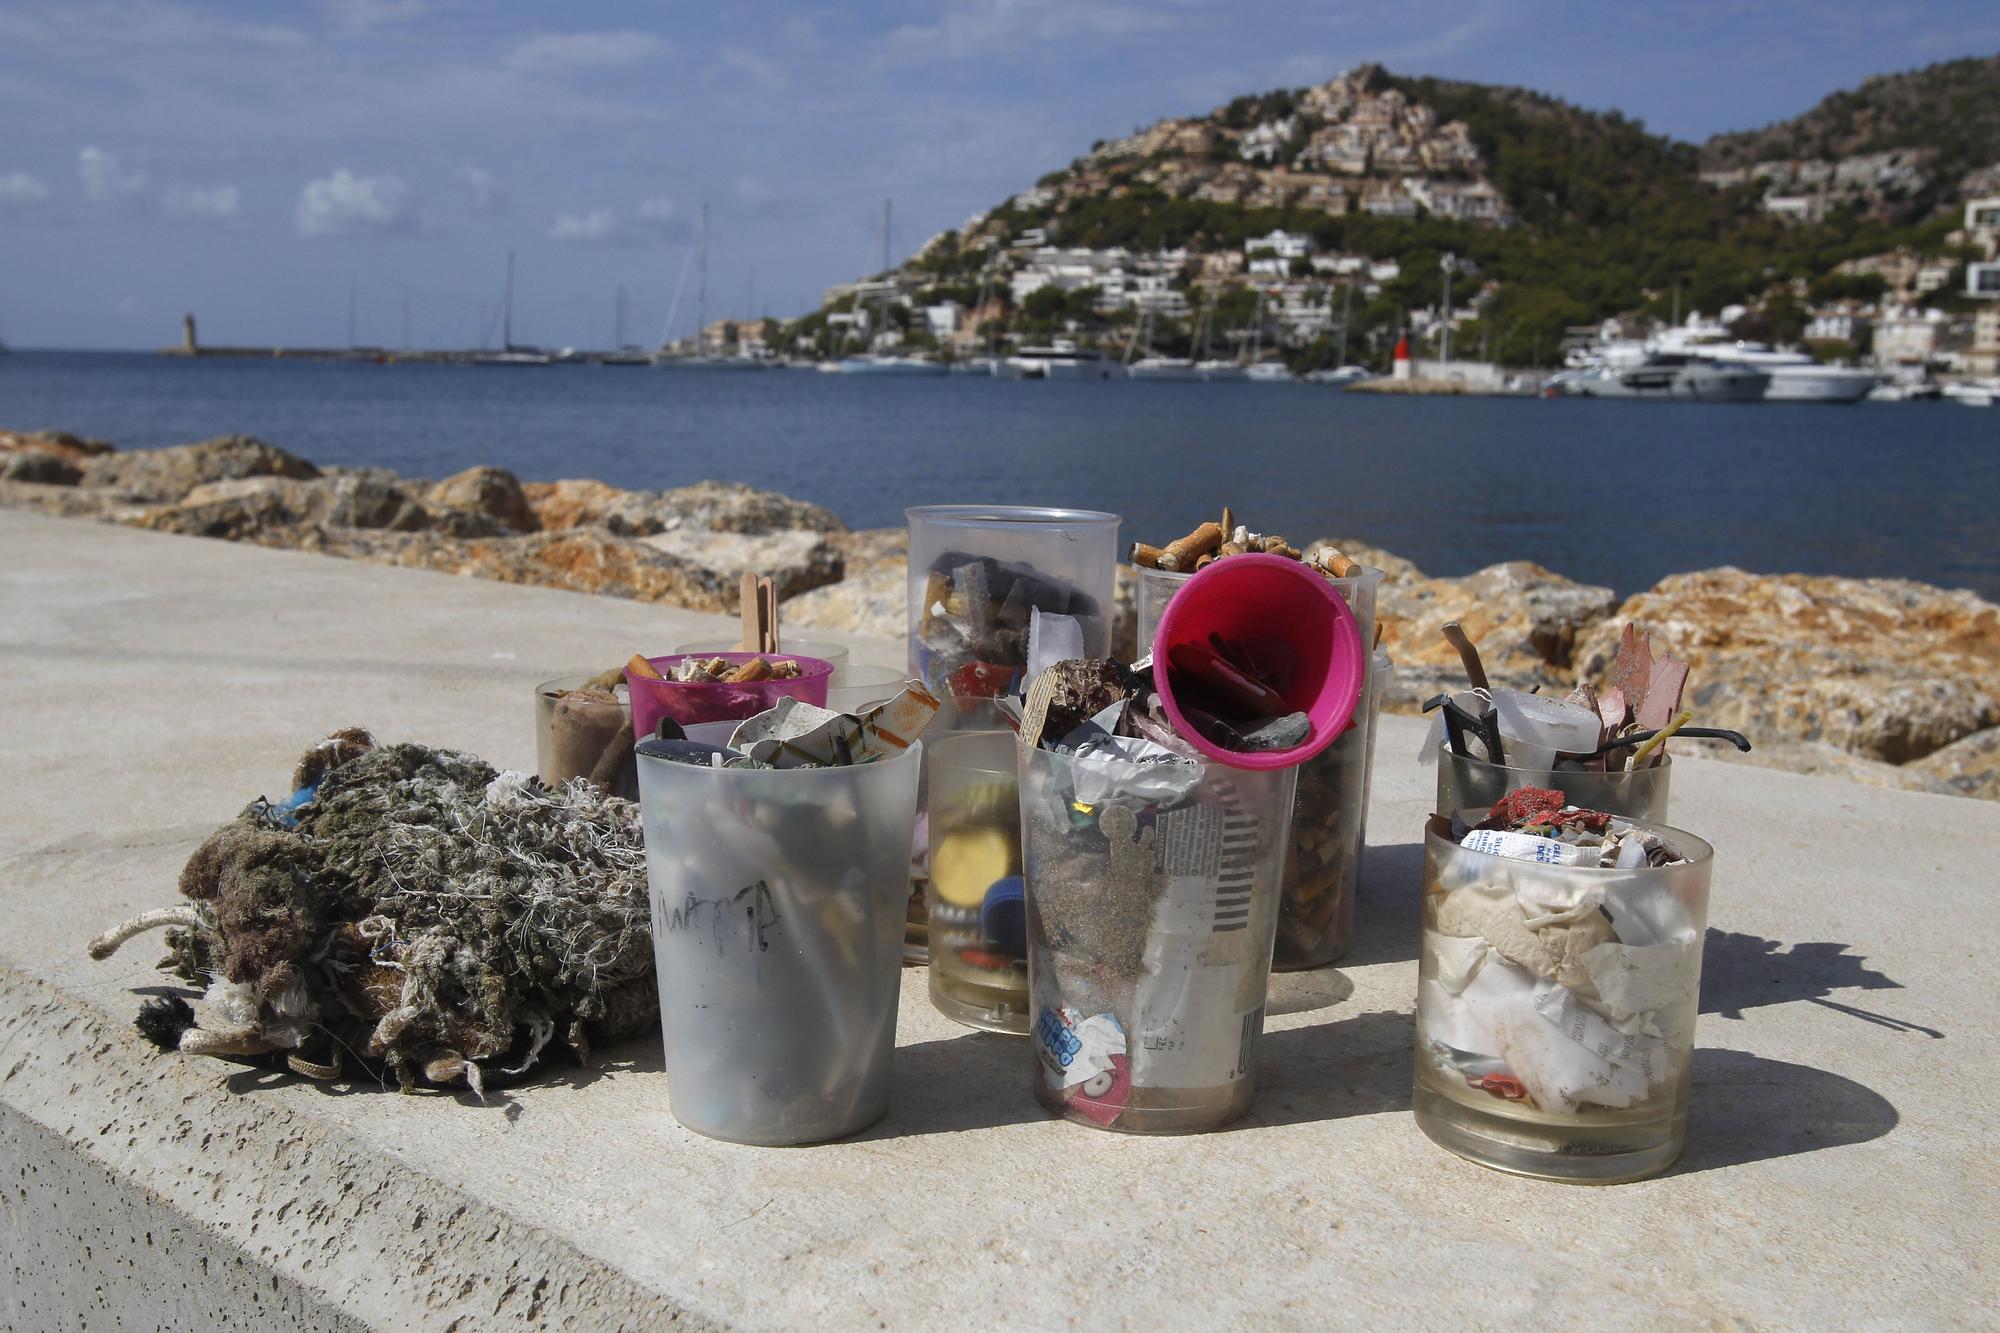 La Reina Sofía participa en la recogida de residuos marinos en Mallorca